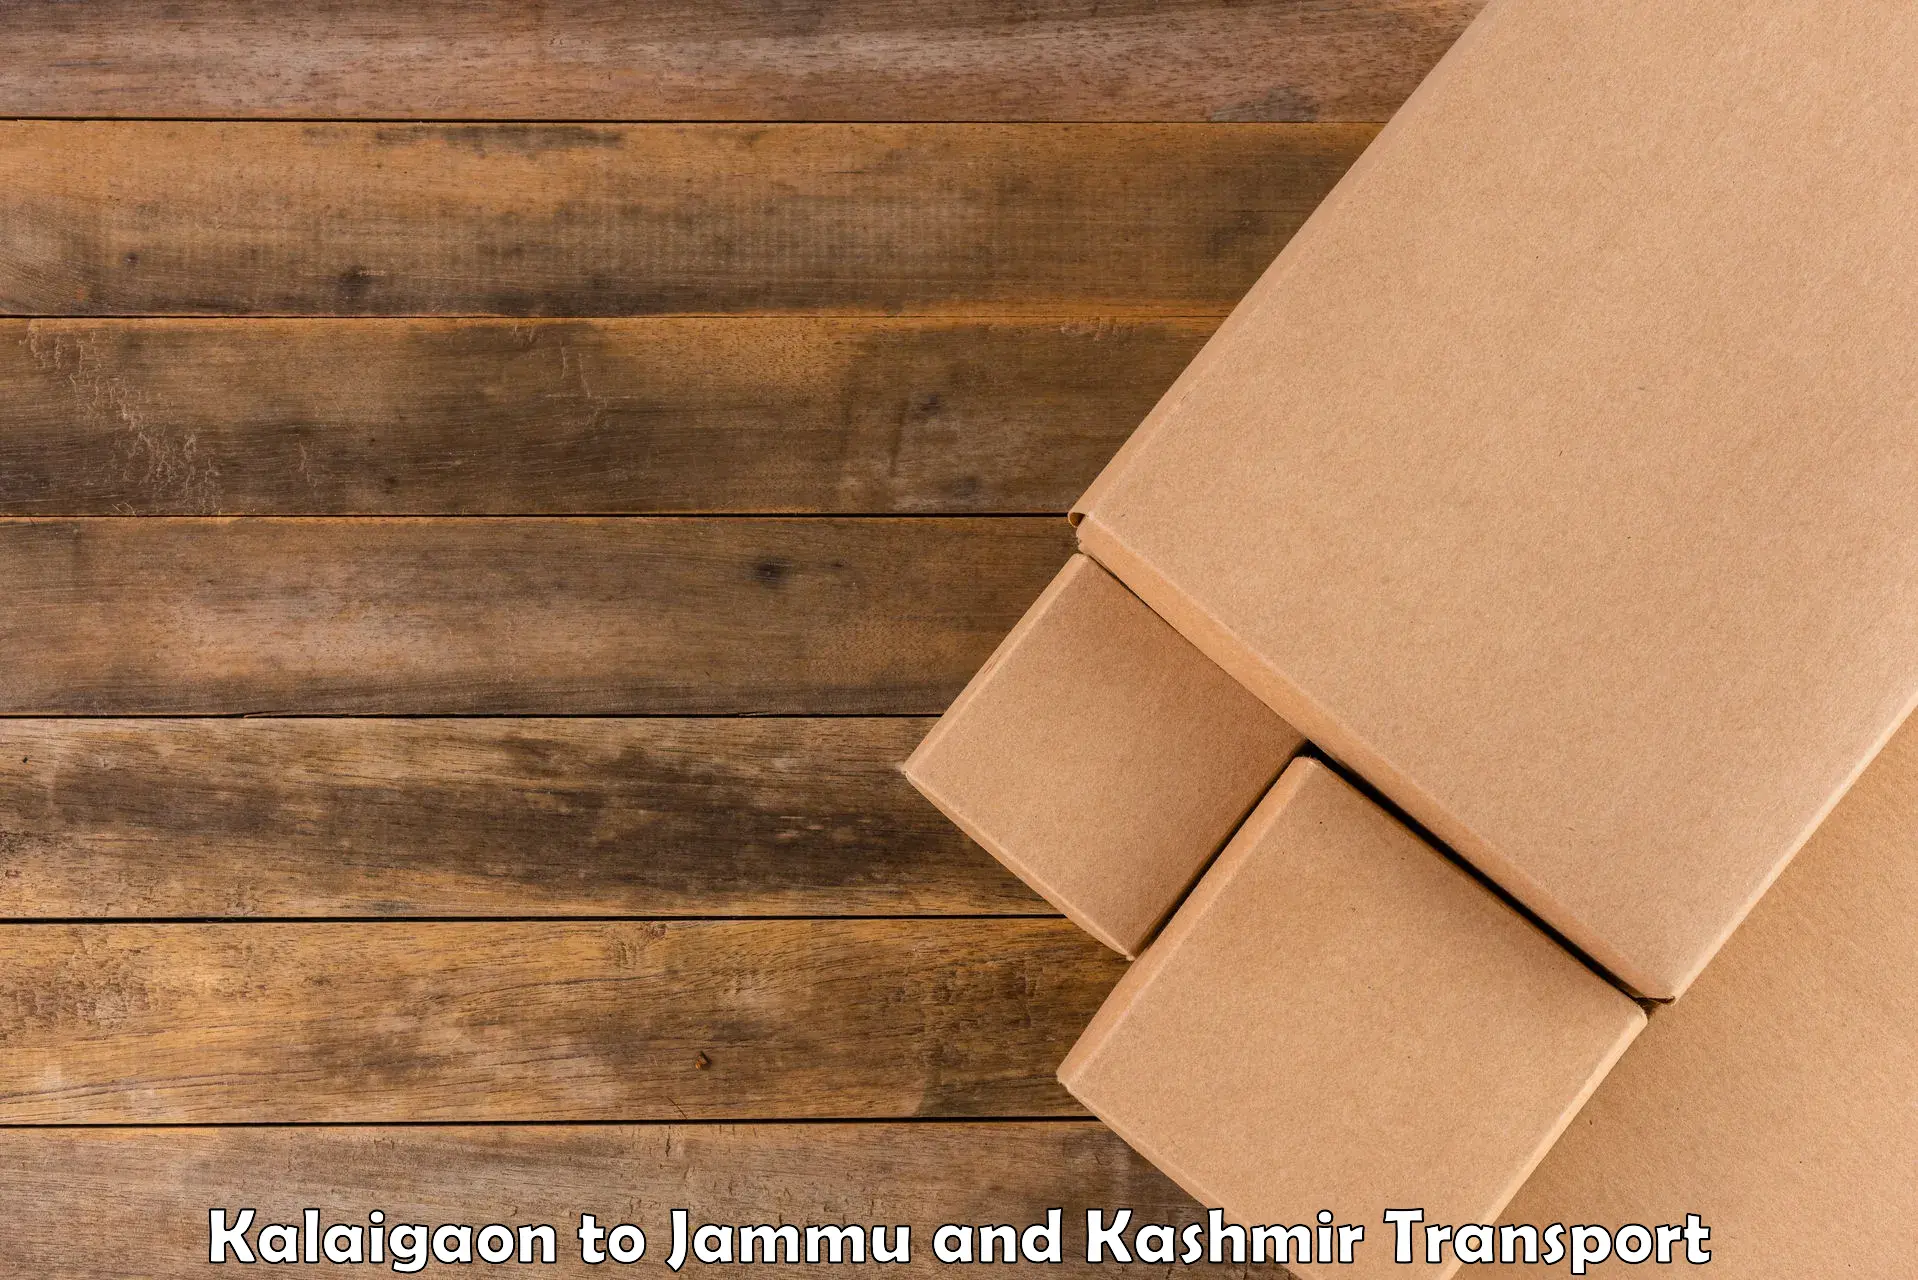 Commercial transport service Kalaigaon to IIT Jammu